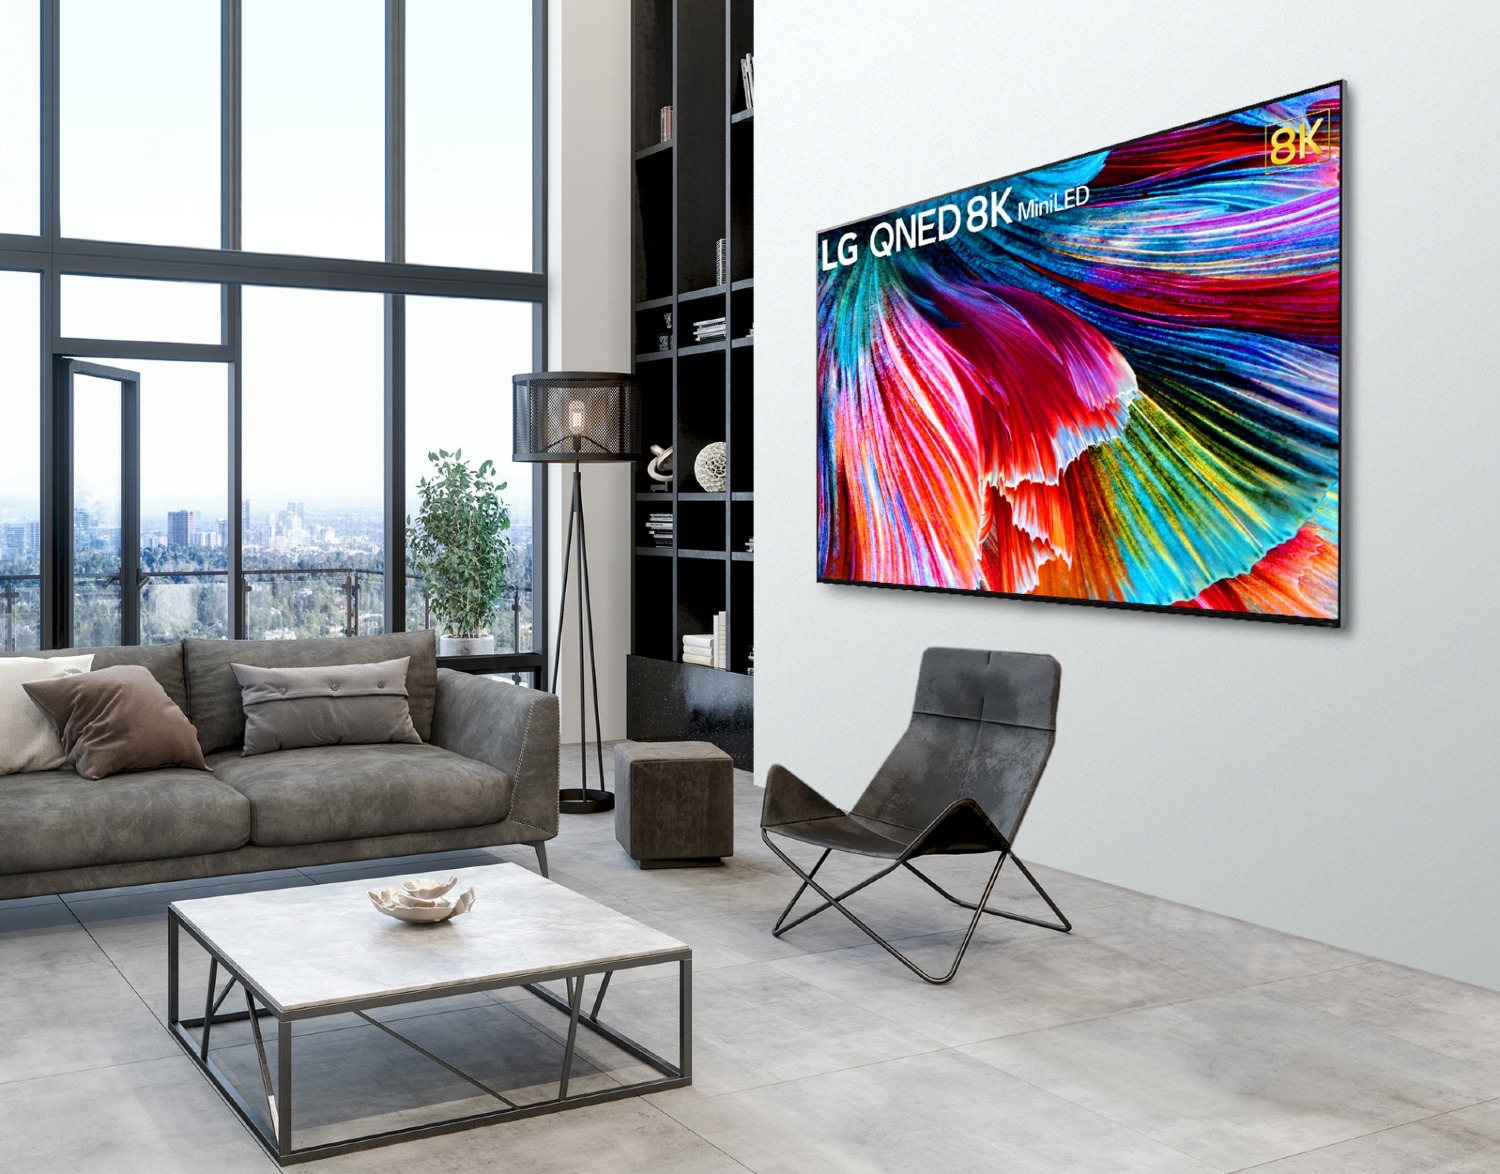 Ahora disponible en todo el mundo, LG QNED mini LED TV establece un nuevo estándar de calidad de imagen LCD 